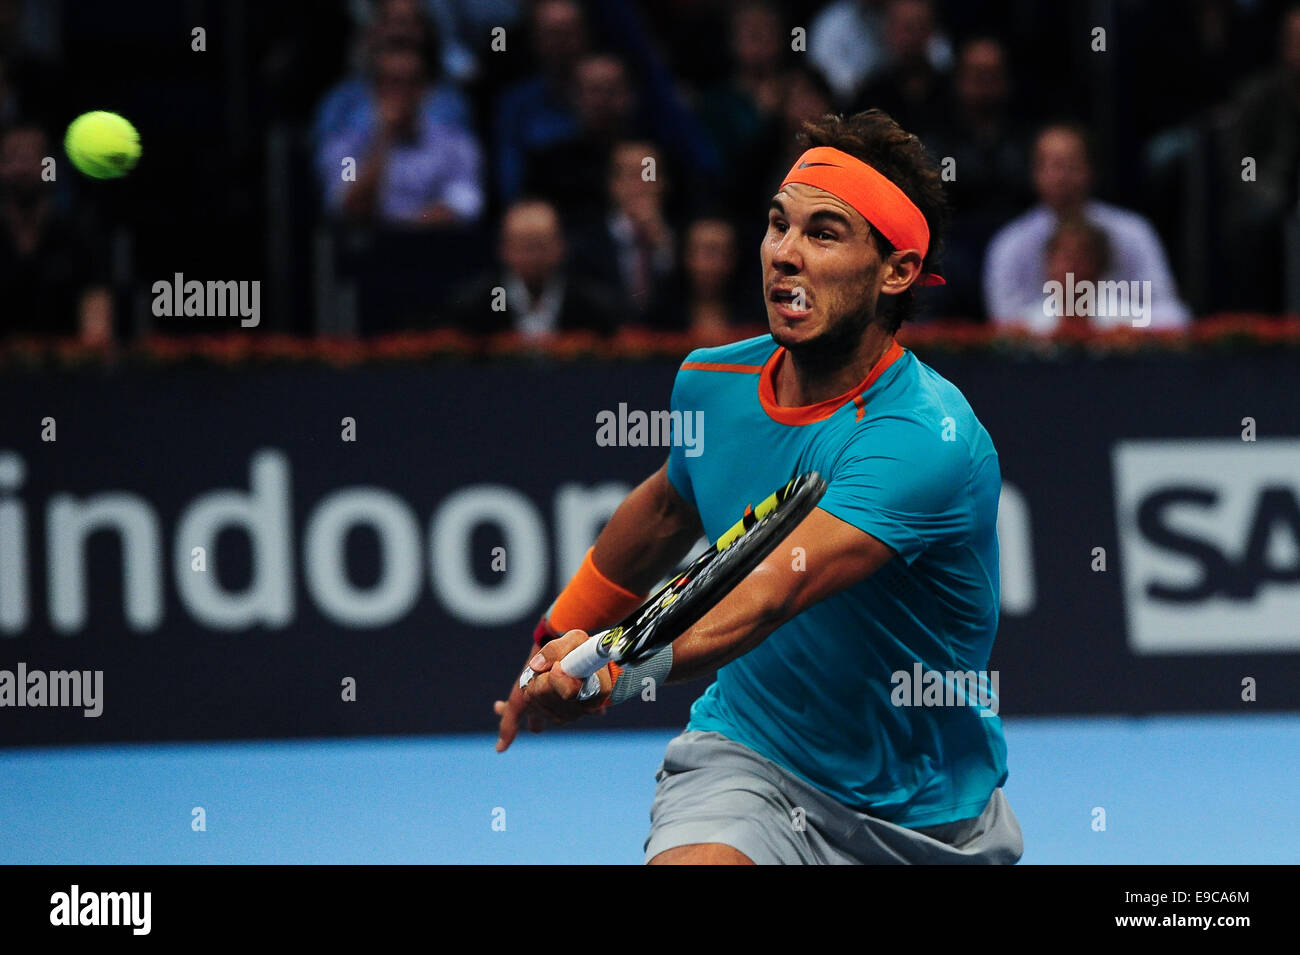 Basel, Svizzera. 24 ottobre, 2014. Rafael Nadal gioca un volley durante il trimestre finale del Swiss interni a St. Jakobshalle. Foto: Miroslav Dakov/ Alamy Live News Foto Stock